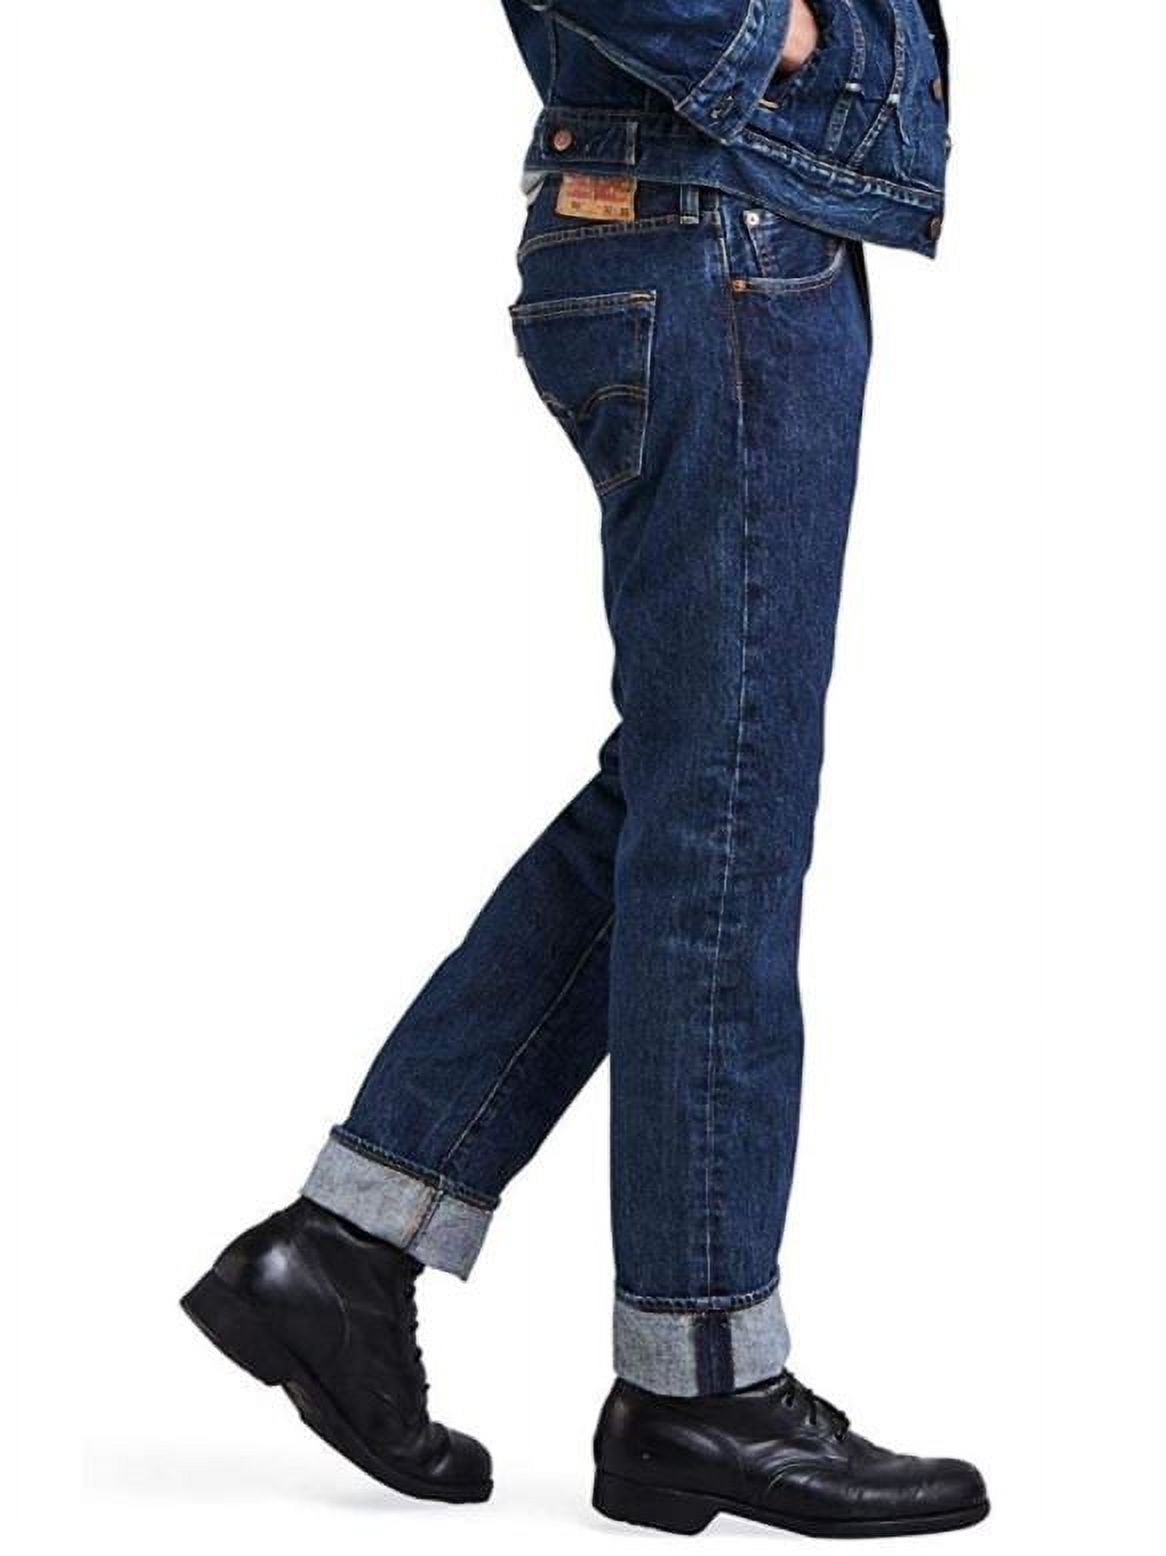 Levi's Men's 501 Original Fit Jeans - image 5 of 6